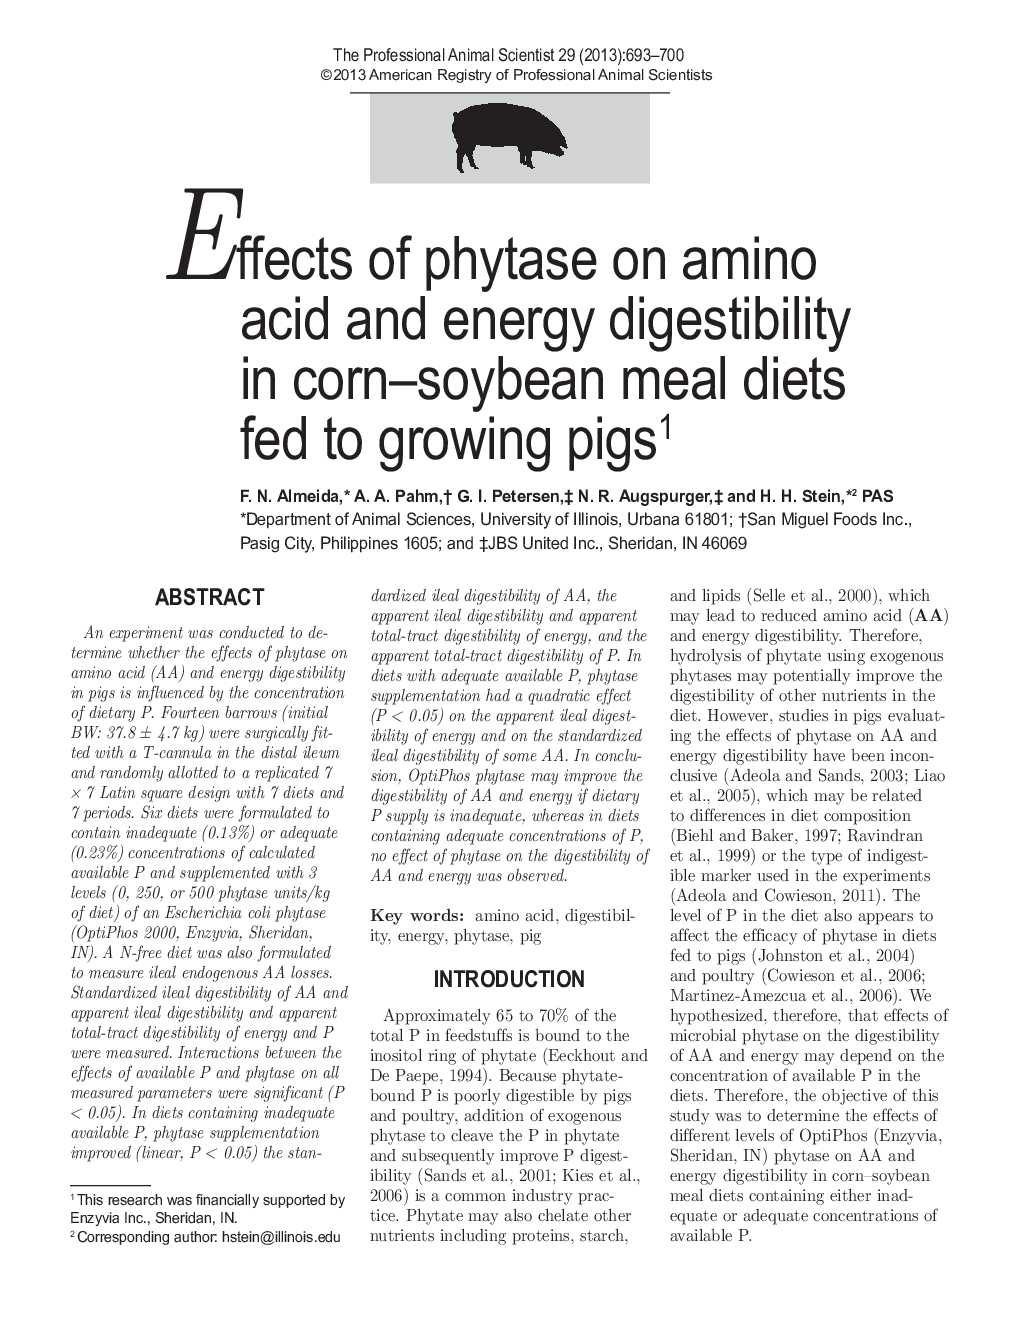 اثر فیتاز بر اسید آمینه و قابلیت هضم انرژی در رژیم های غذایی ذرت و سویا تغذیه شده به خوک های در حال رشد 1 